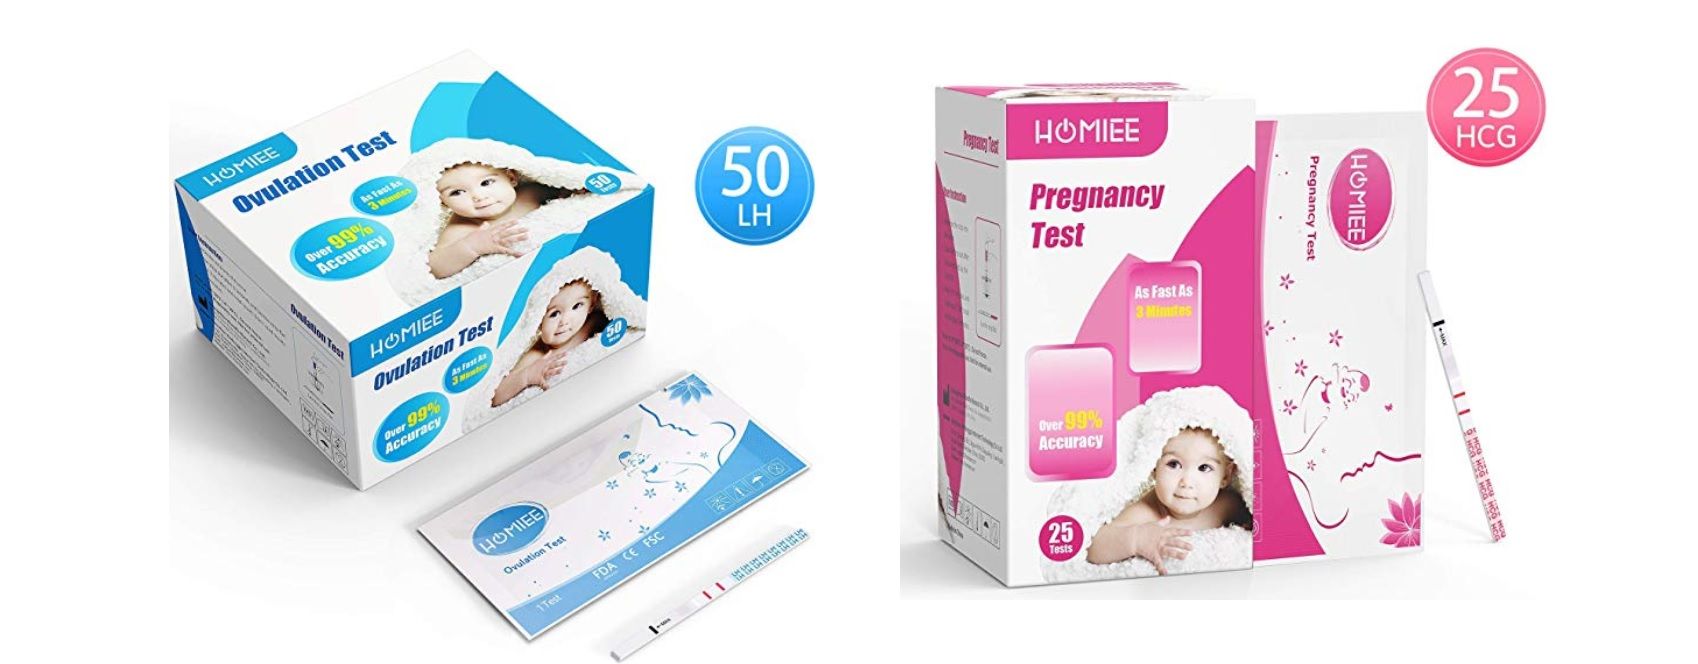 ¡Mitad de precio! 25 Test de embarazo o 50 Test de ovulación por sólo 5,99€ con este cupón descuento